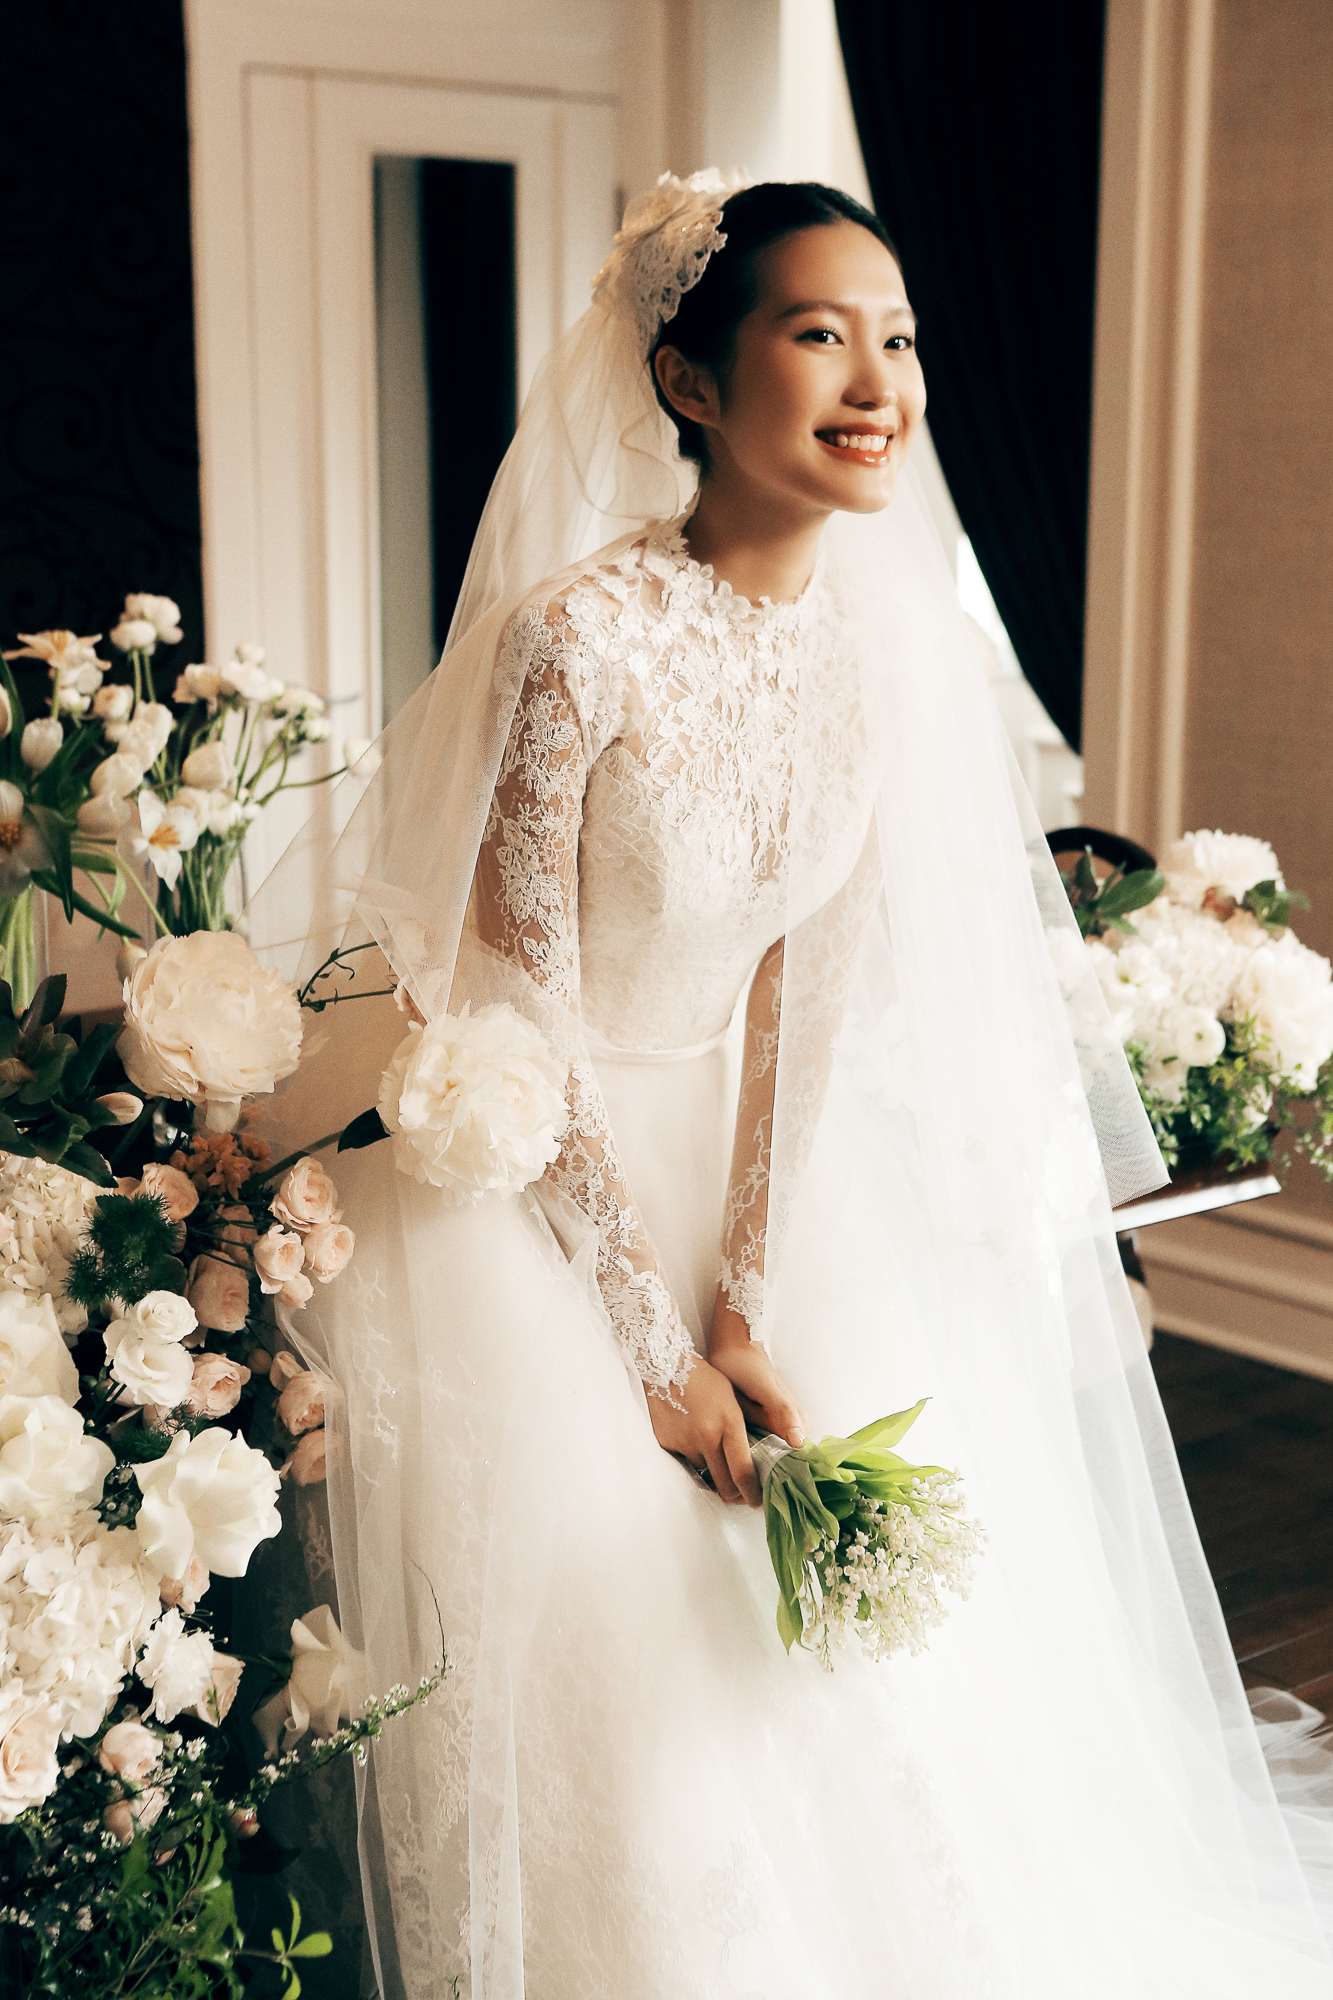 Top váy cưới đẹp “miễn chê” của sao Việt năm 2014